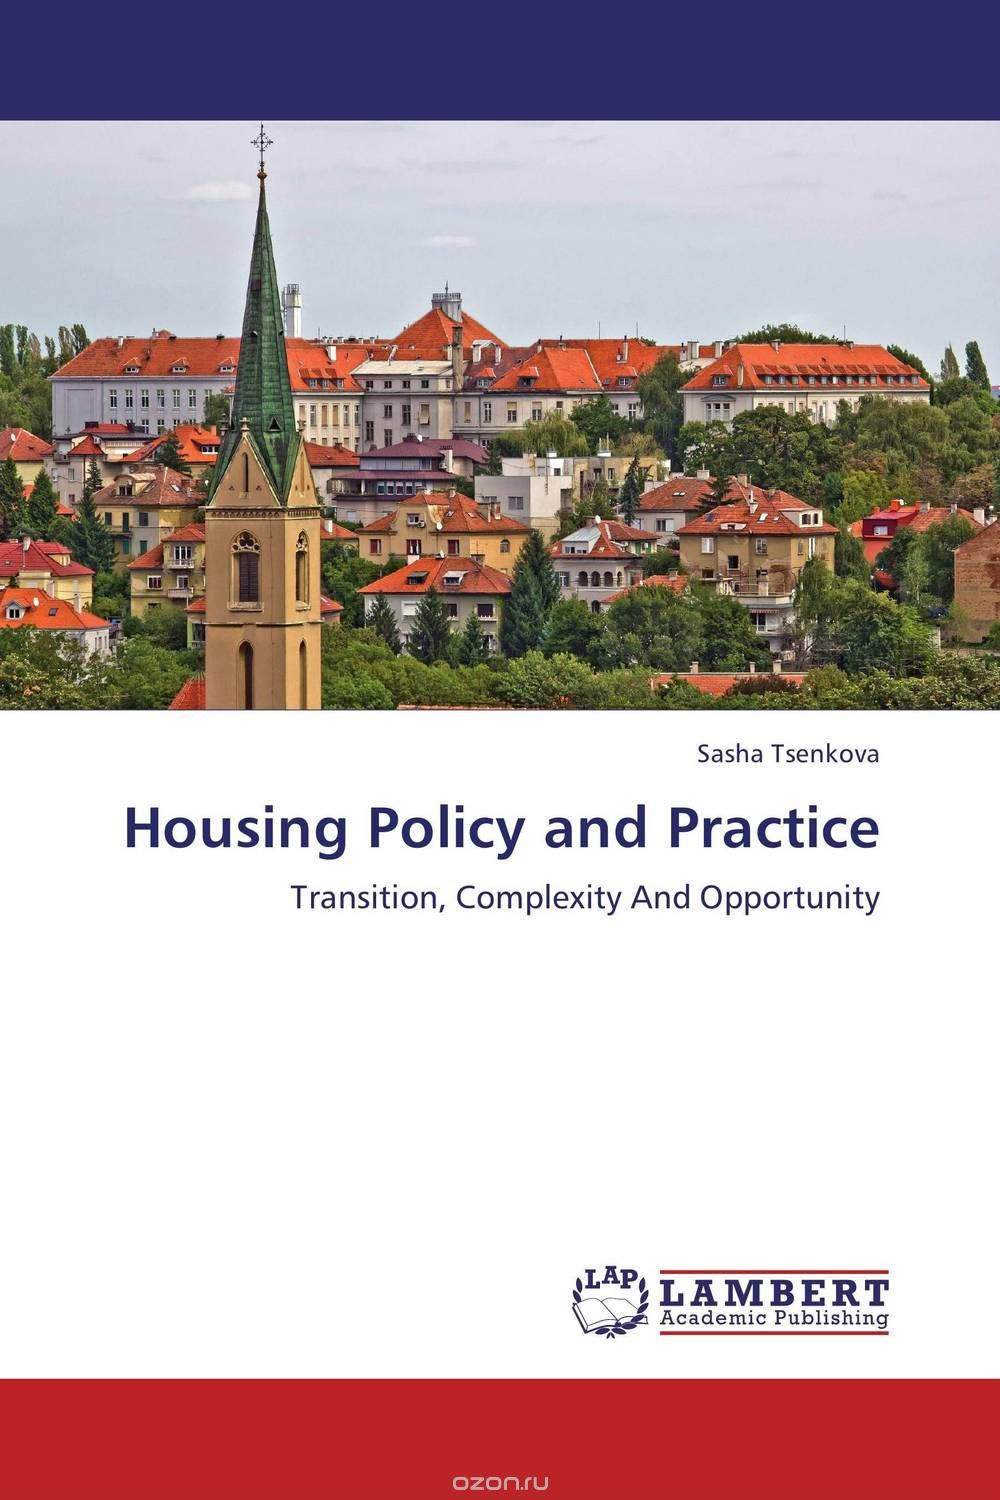 Скачать книгу "Housing Policy and Practice"